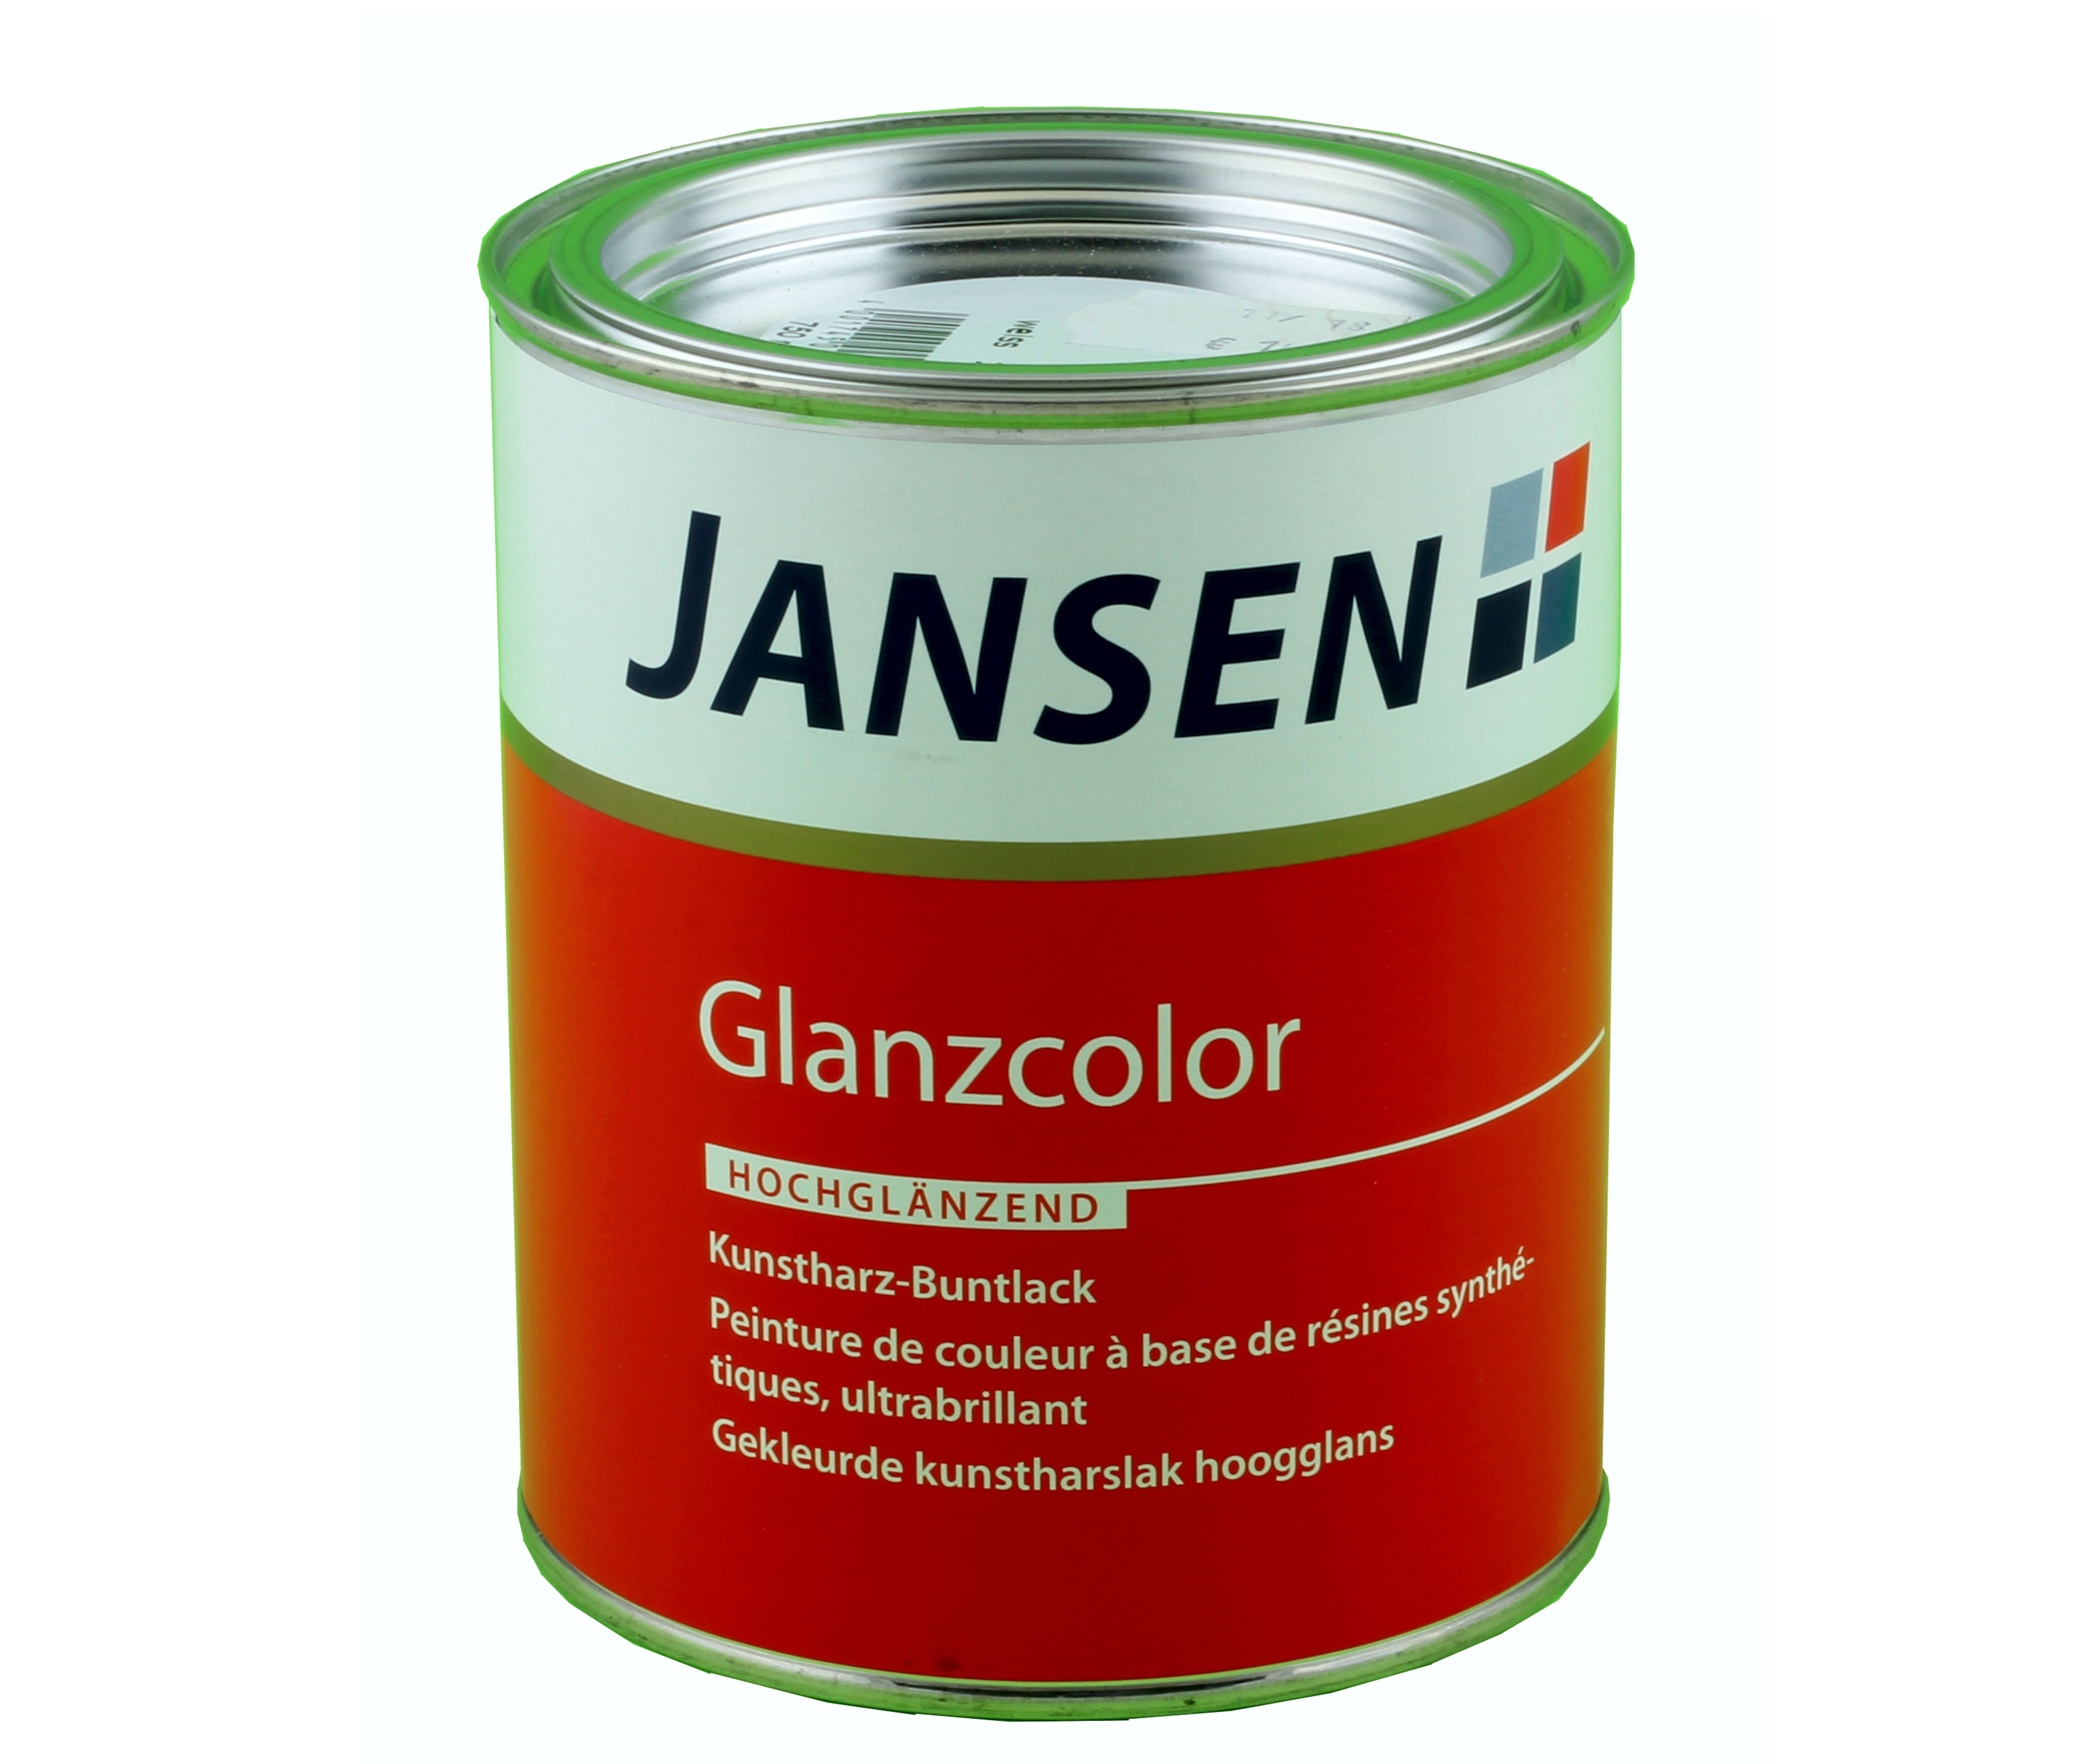 Jansen Glanzcolor schwarz hg  375 ml